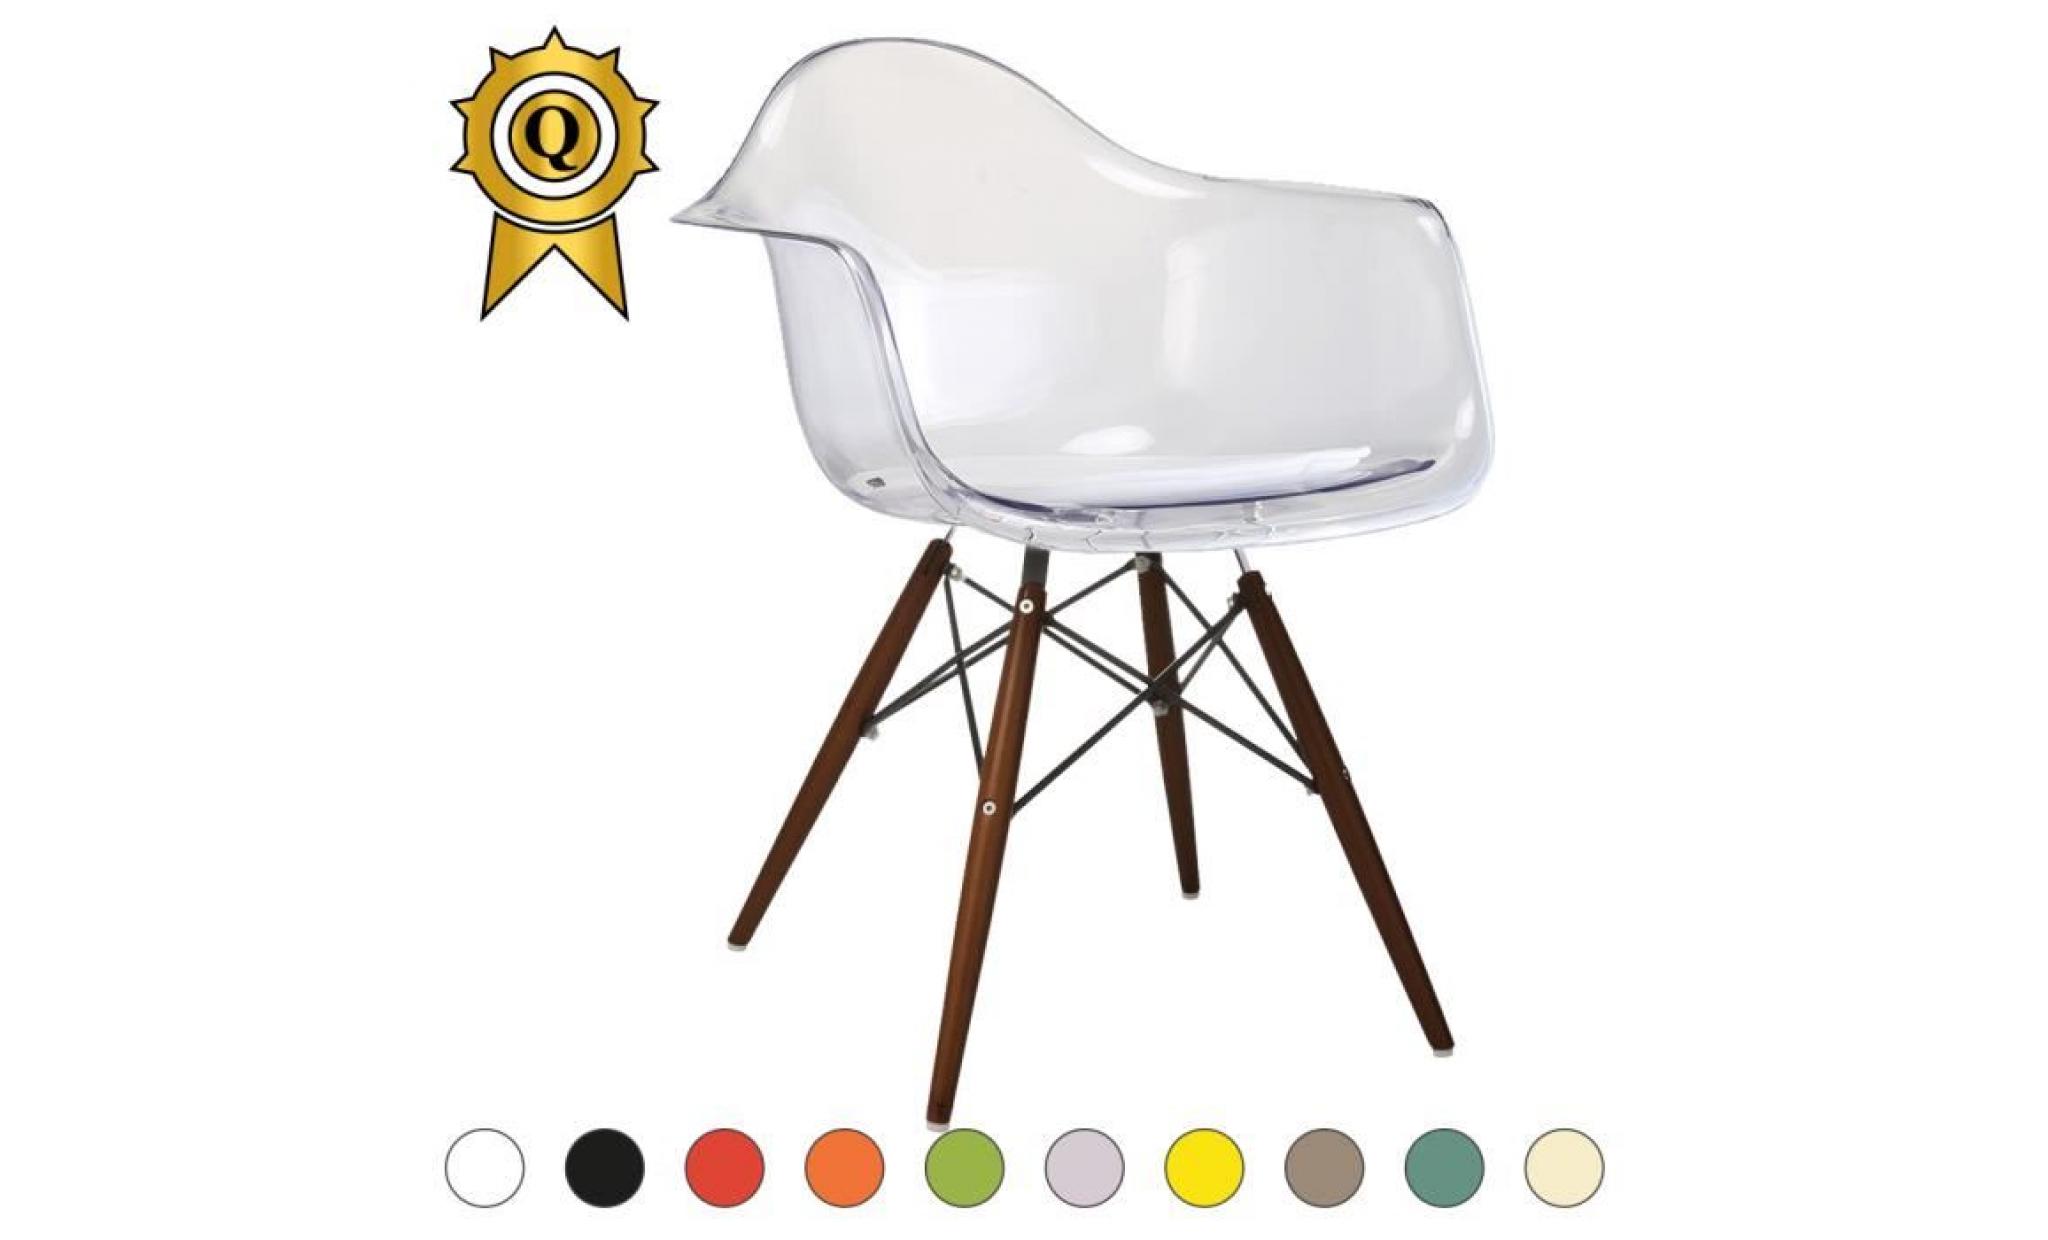 1 x fauteuil design retro style eames daw hauteur 48cm pieds en bois vernis noyer assise graphite mobistyl®